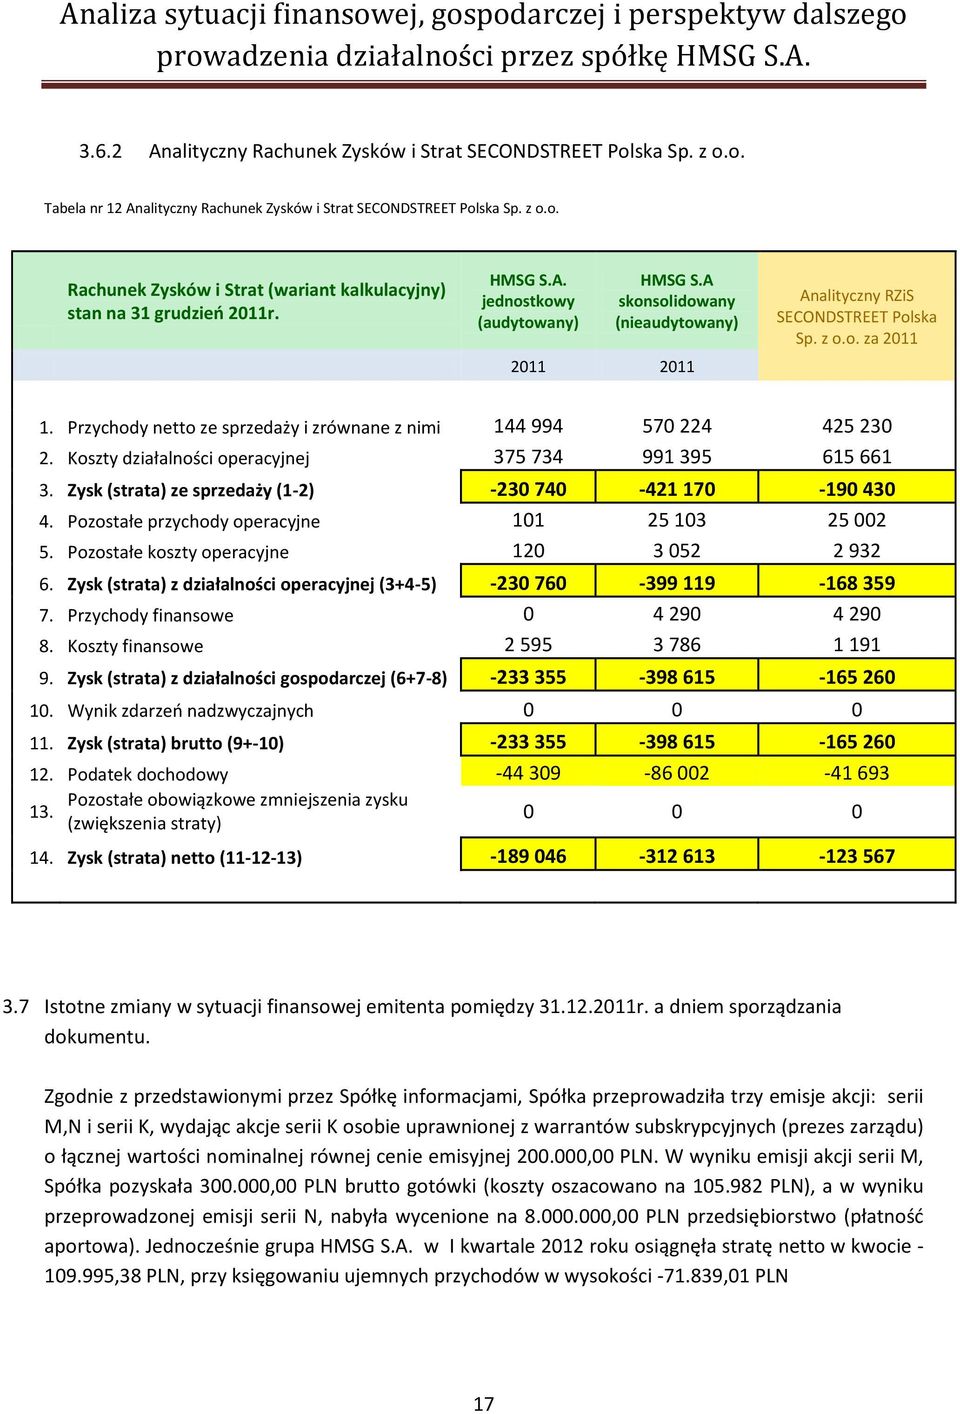 A skonsolidowany (nieaudytowany) 2011 2011 Analityczny RZiS SECONDSTREET Polska Sp. z o.o. za 2011 1. Przychody netto ze sprzedaży i zrównane z nimi 144 994 570 224 425 230 2.